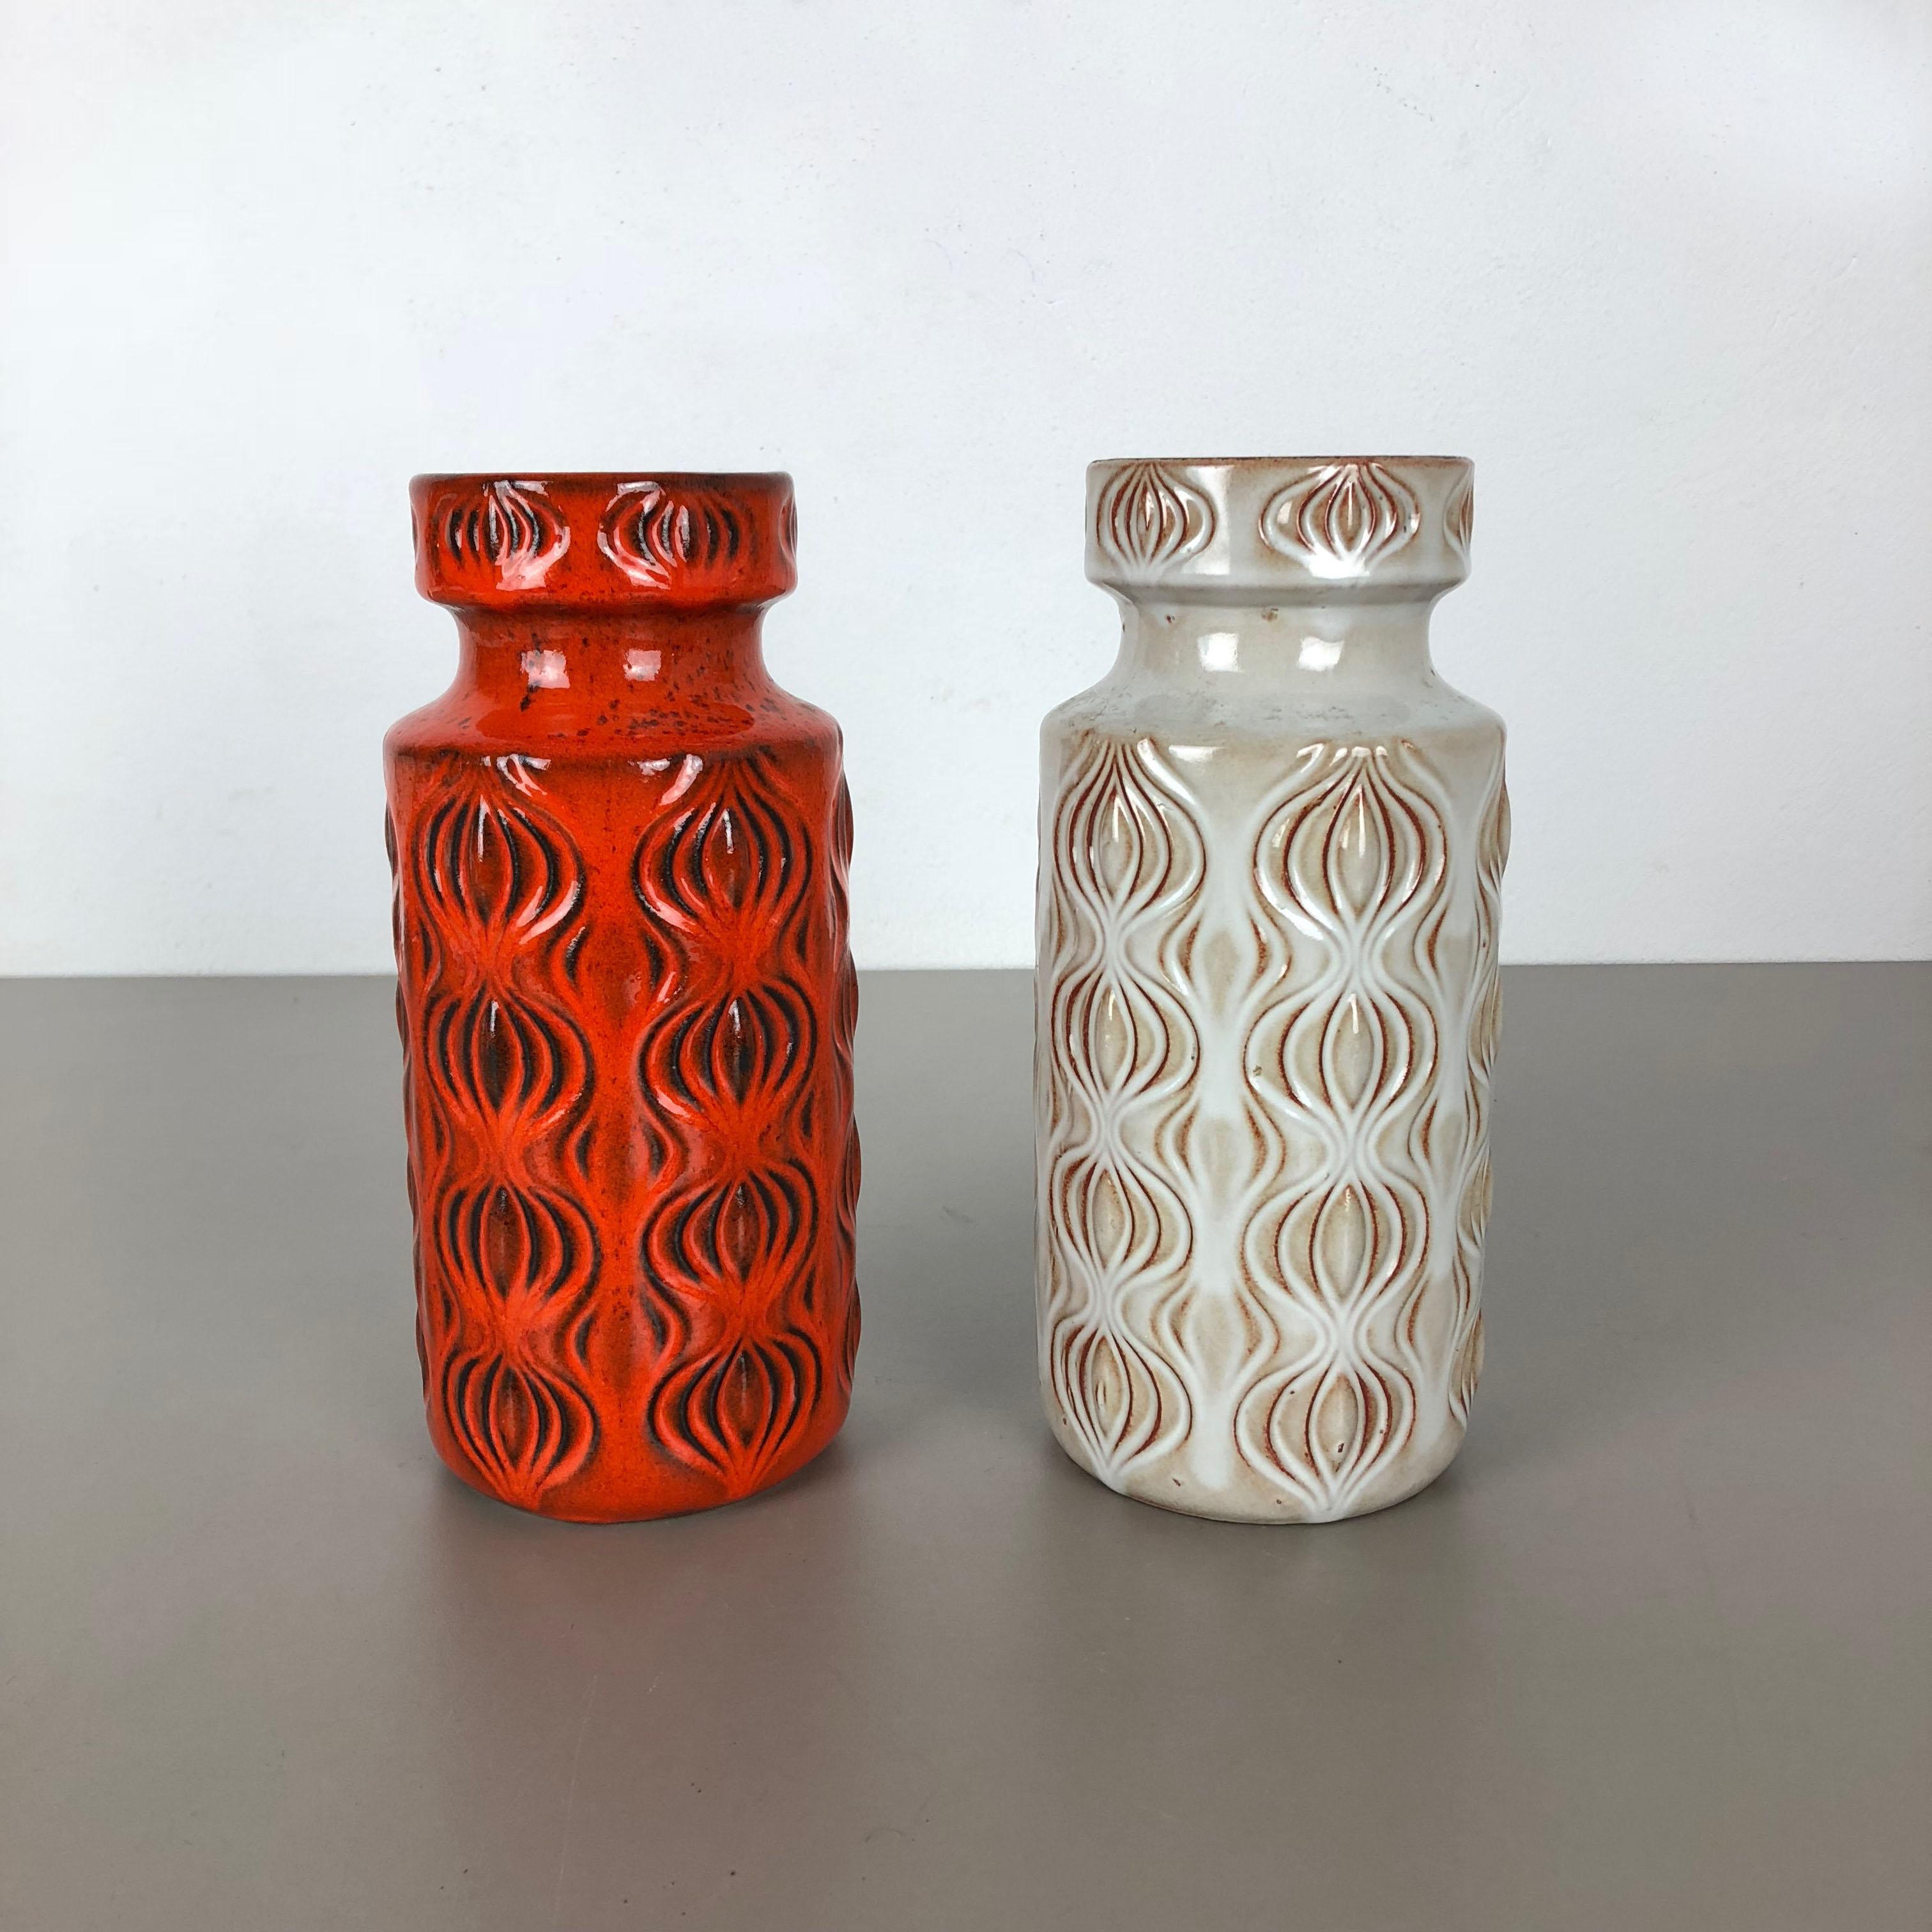 Artikel:

Set aus zwei fetten Lavakunstvasen

Modell: Zwiebel

Produzent:

Scheurich, Deutschland



Jahrzehnt:

1970s


Diese originalen Vintage-Vasen wurden in den 1970er Jahren in Deutschland hergestellt. Sie ist aus Keramik in